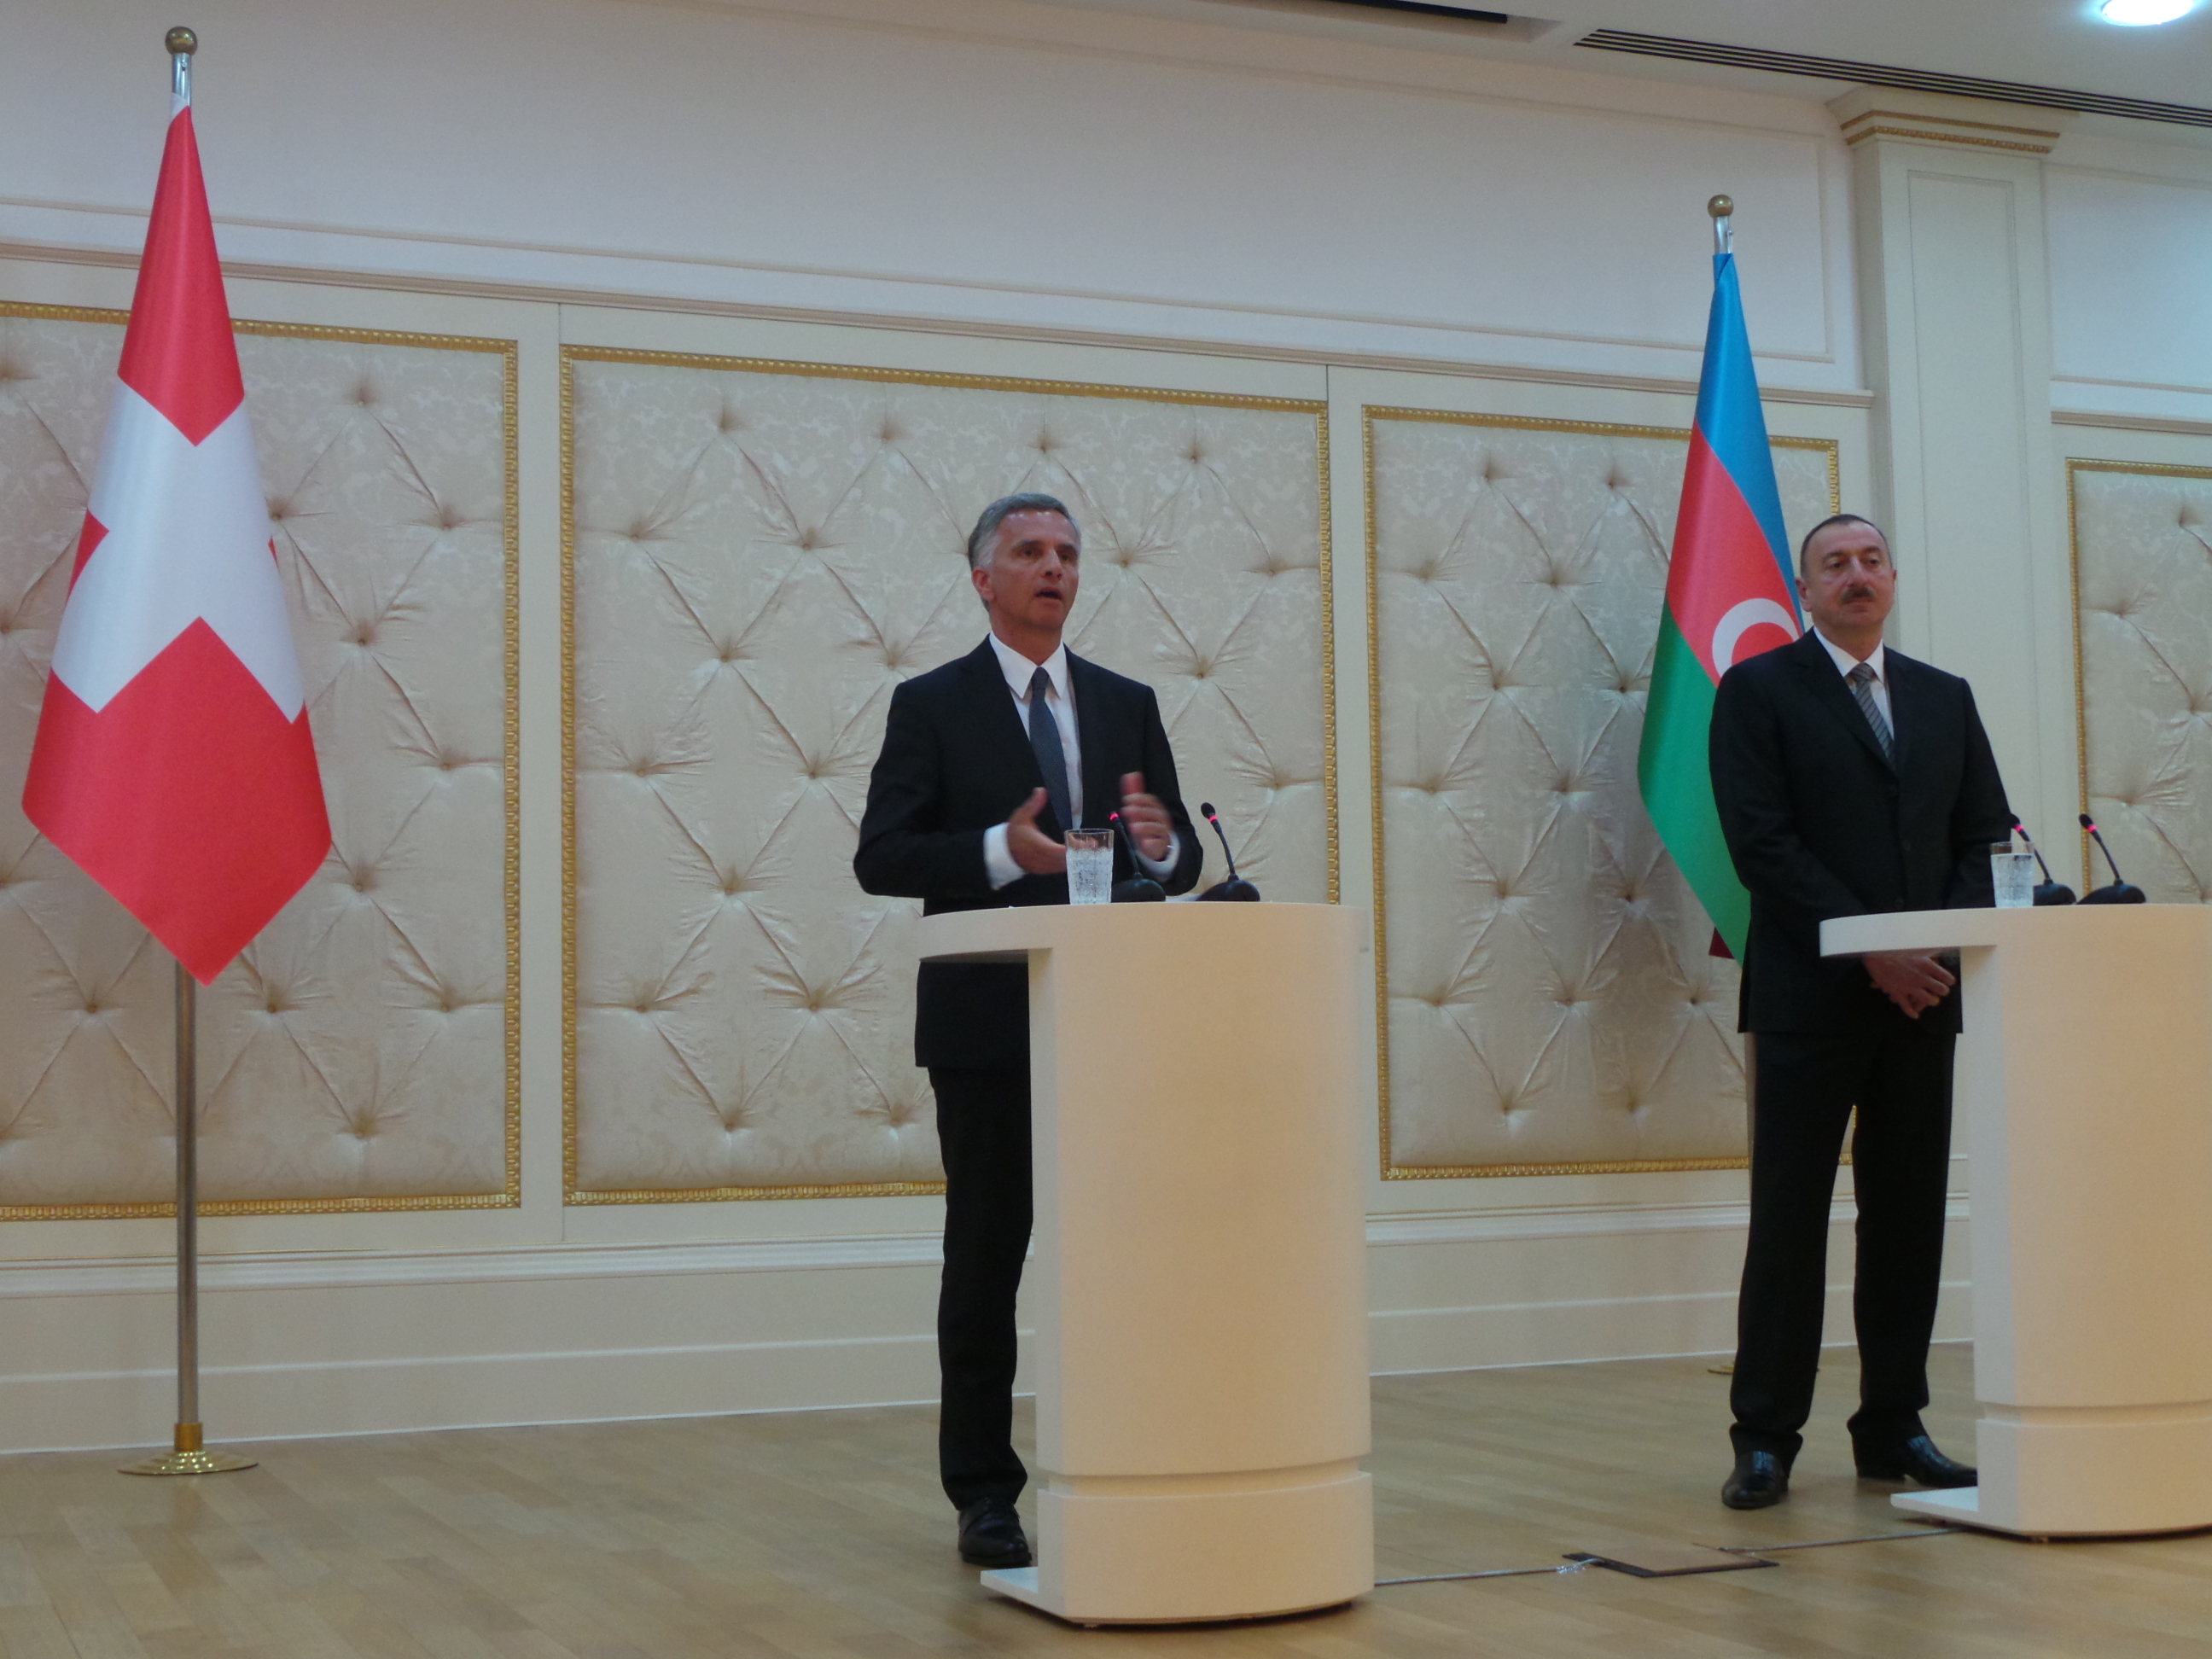 Le président de la Confédération Didier Burkhalter et le président azerbaïdjanais Ilham Aliyev répondent aux questions des médias.